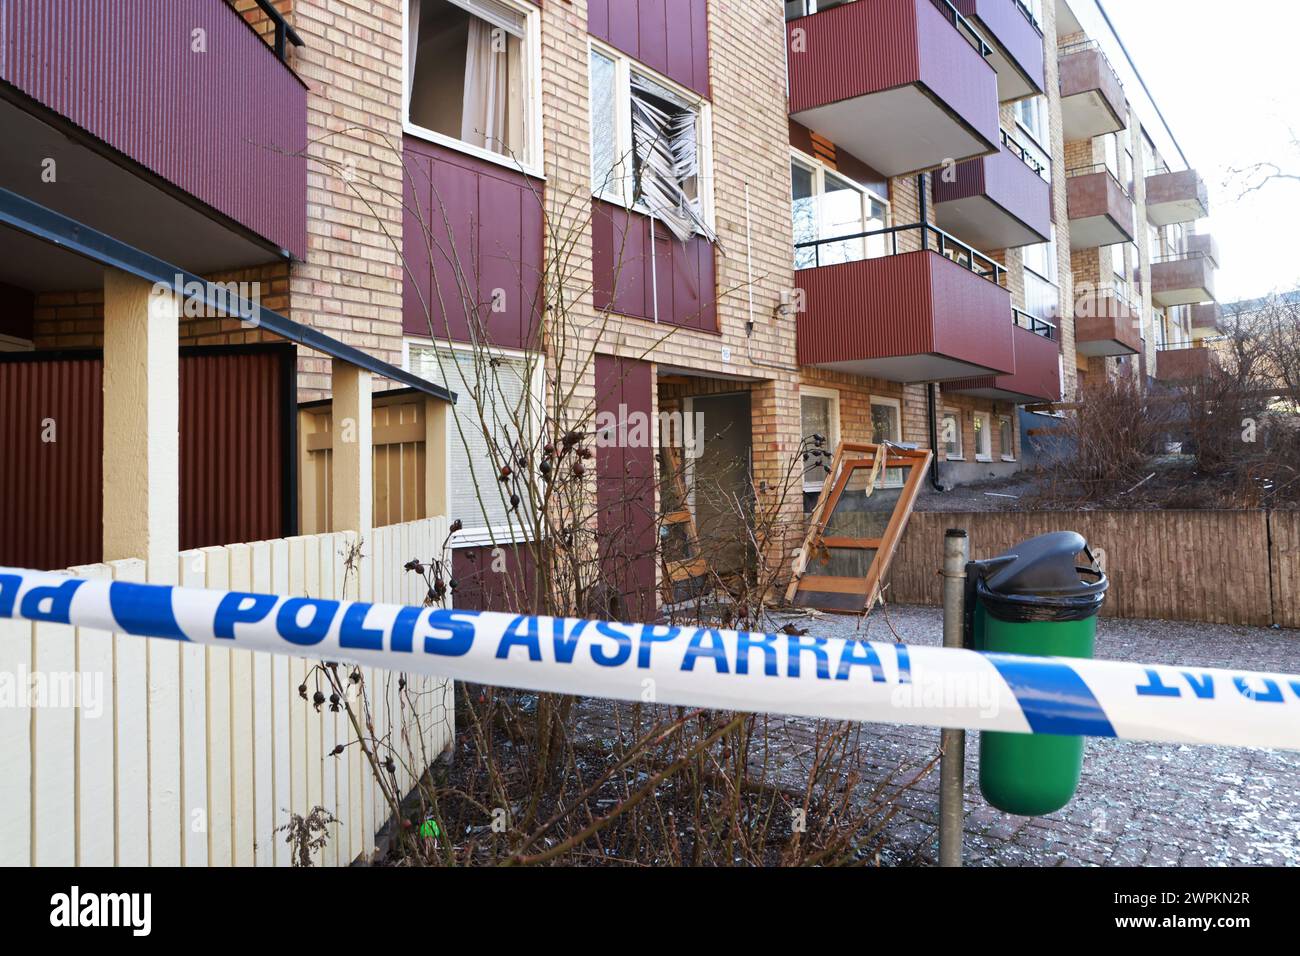 Une explosion s'est produite dans la nuit de jeudi dans un immeuble à Linköping, en Suède. La police, les services ambulanciers et les services de secours ont été appelés sur les lieux. L'explosion fait partie d'une série d'explosions récemment survenues en Suède. Banque D'Images